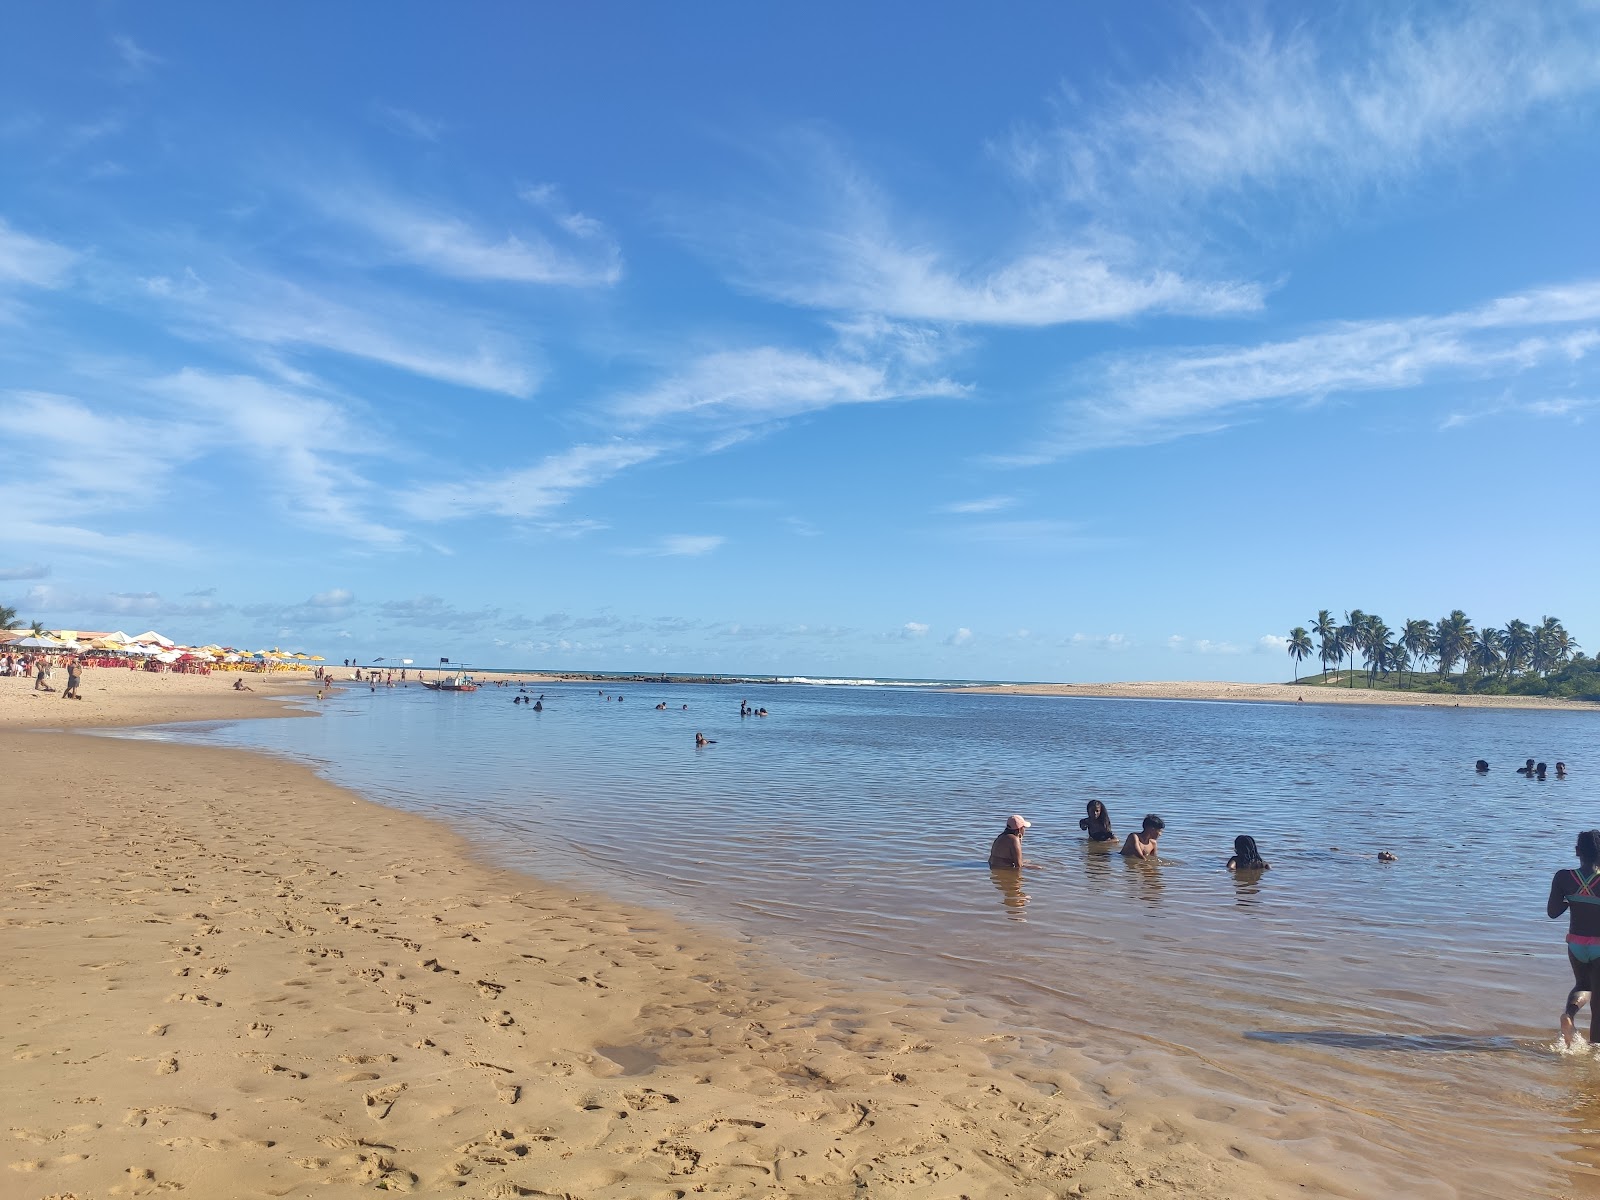 Fotografie cu Praia da Barra cu o suprafață de nisip strălucitor